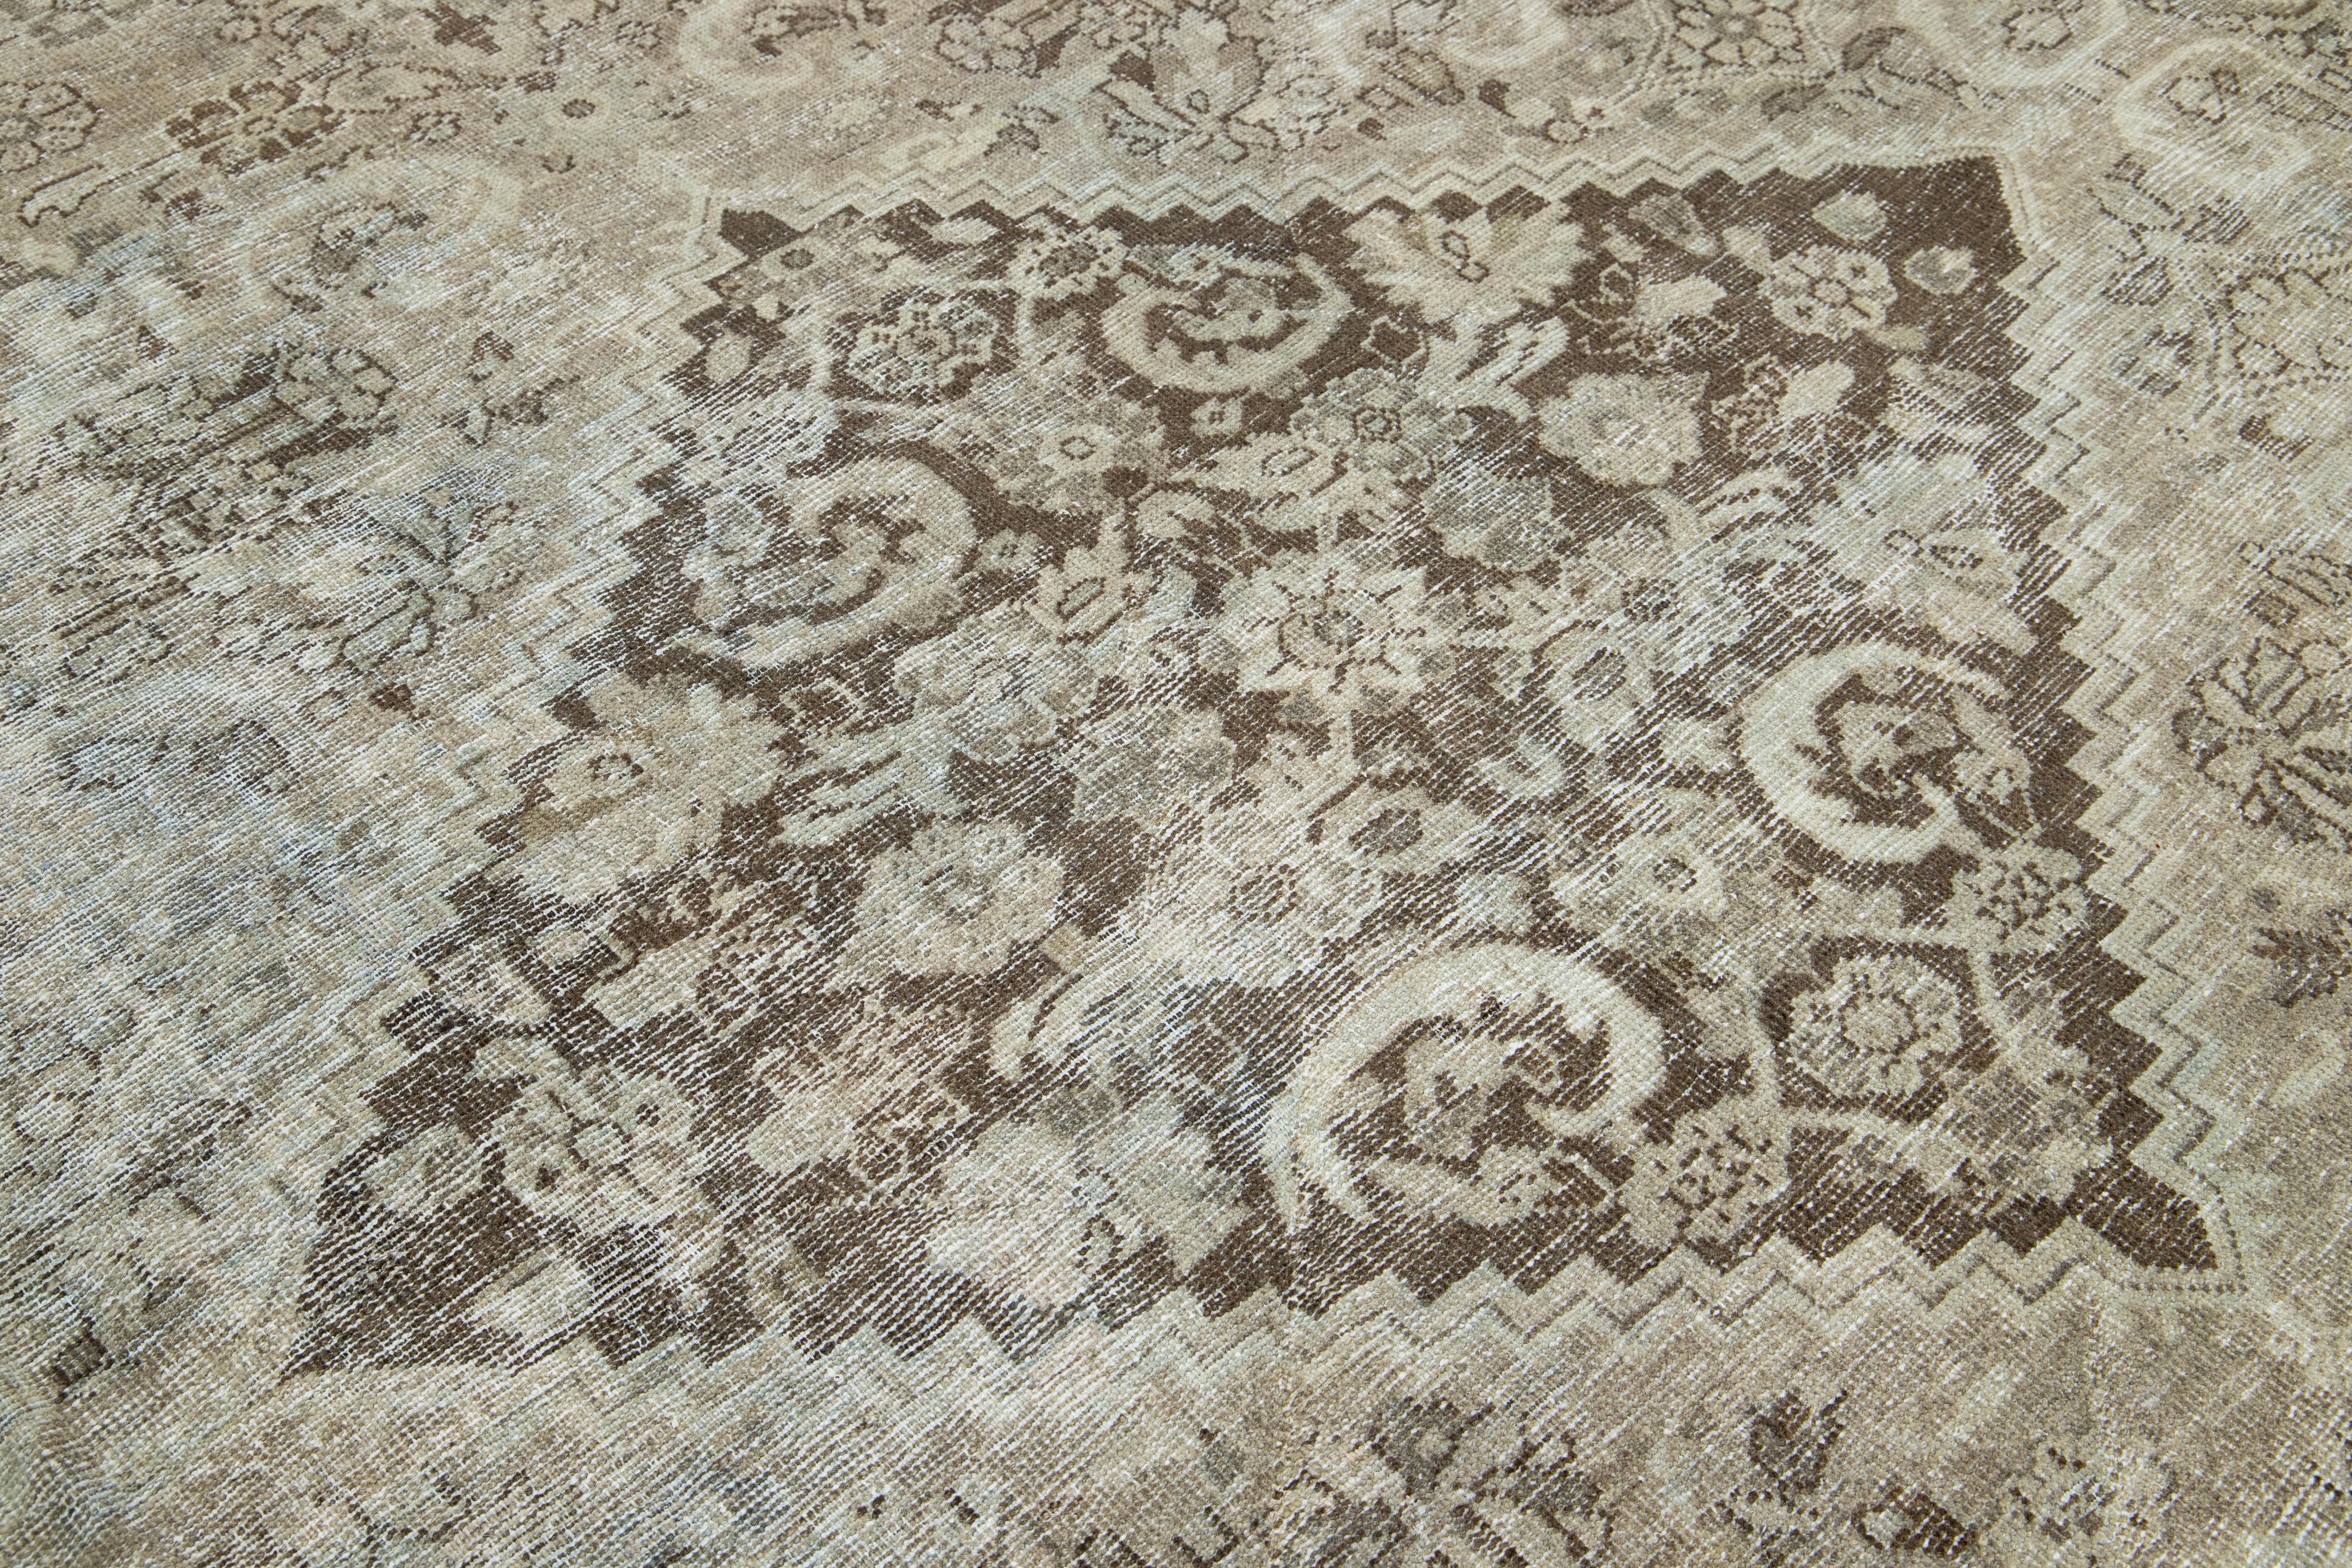 Laine Brown Antique Persian Mahal Wool Rug With Allover Pattern From The 1900s (Tapis de laine persan Mahal à motifs variés datant des années 1900) en vente